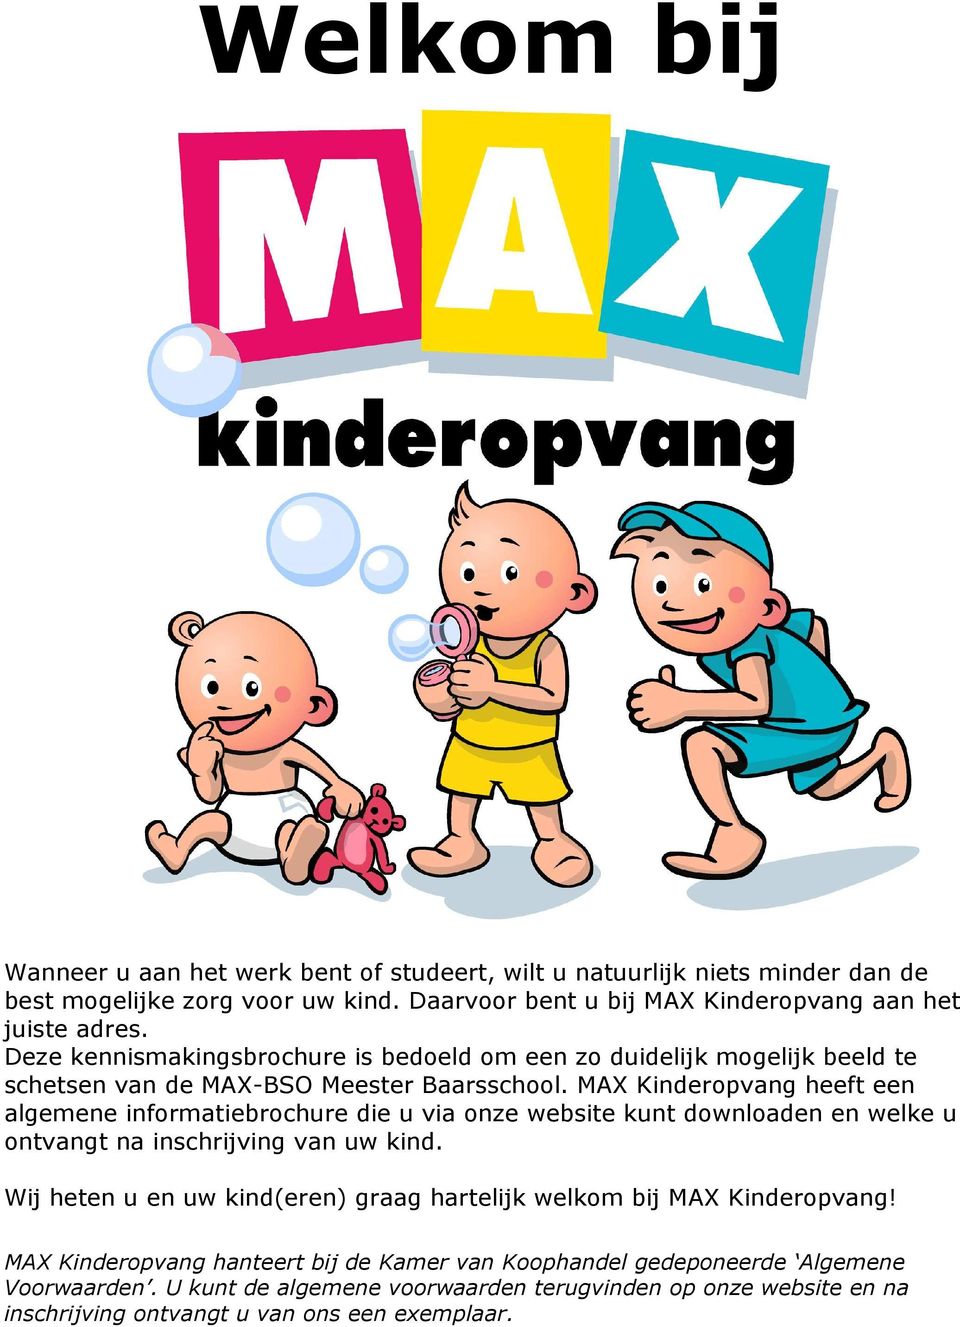 MAX Kinderopvang heeft een algemene informatiebrochure die u via onze website kunt downloaden en welke u ontvangt na inschrijving van uw kind.